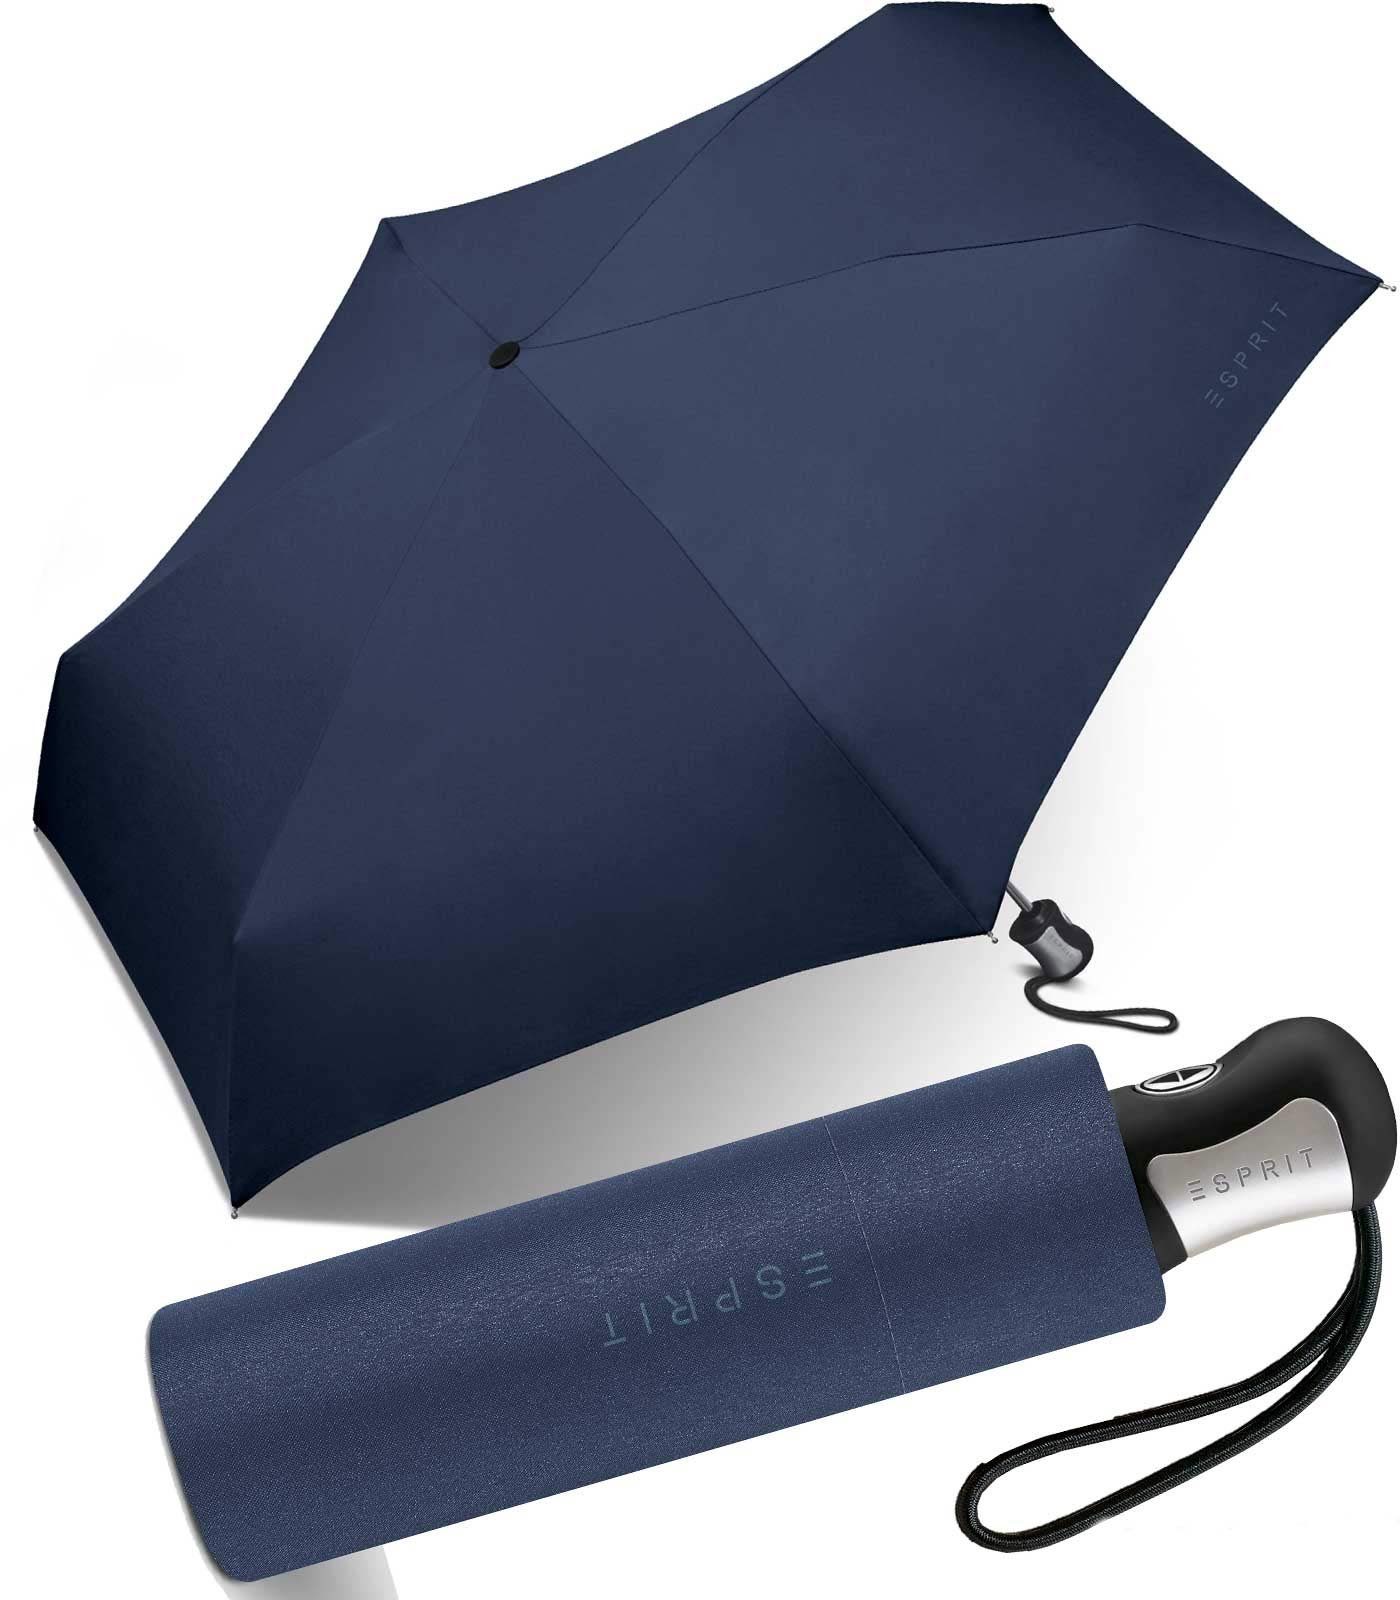 Esprit Langregenschirm schöner, kleiner Schirm für Damen Auf-Zu Automatik, in kräftigen, klassischen Farben - blau